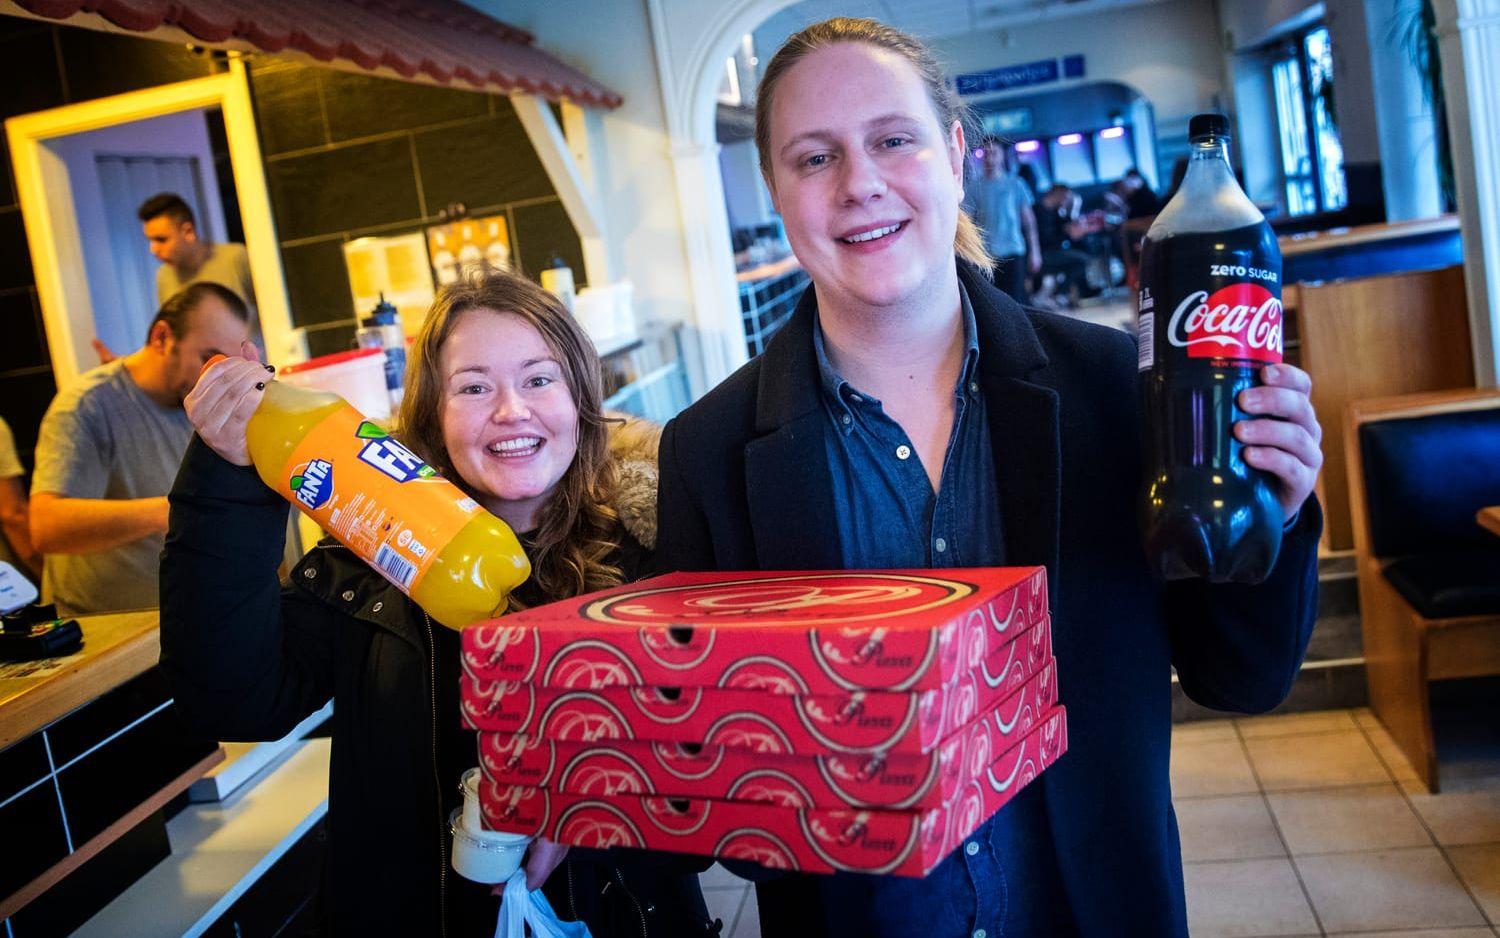 För Lynn Jensen och Gustav Anderberg avslutades ett blött nyårsfirande med pizzafrukost tillsammans med två andra vänner.